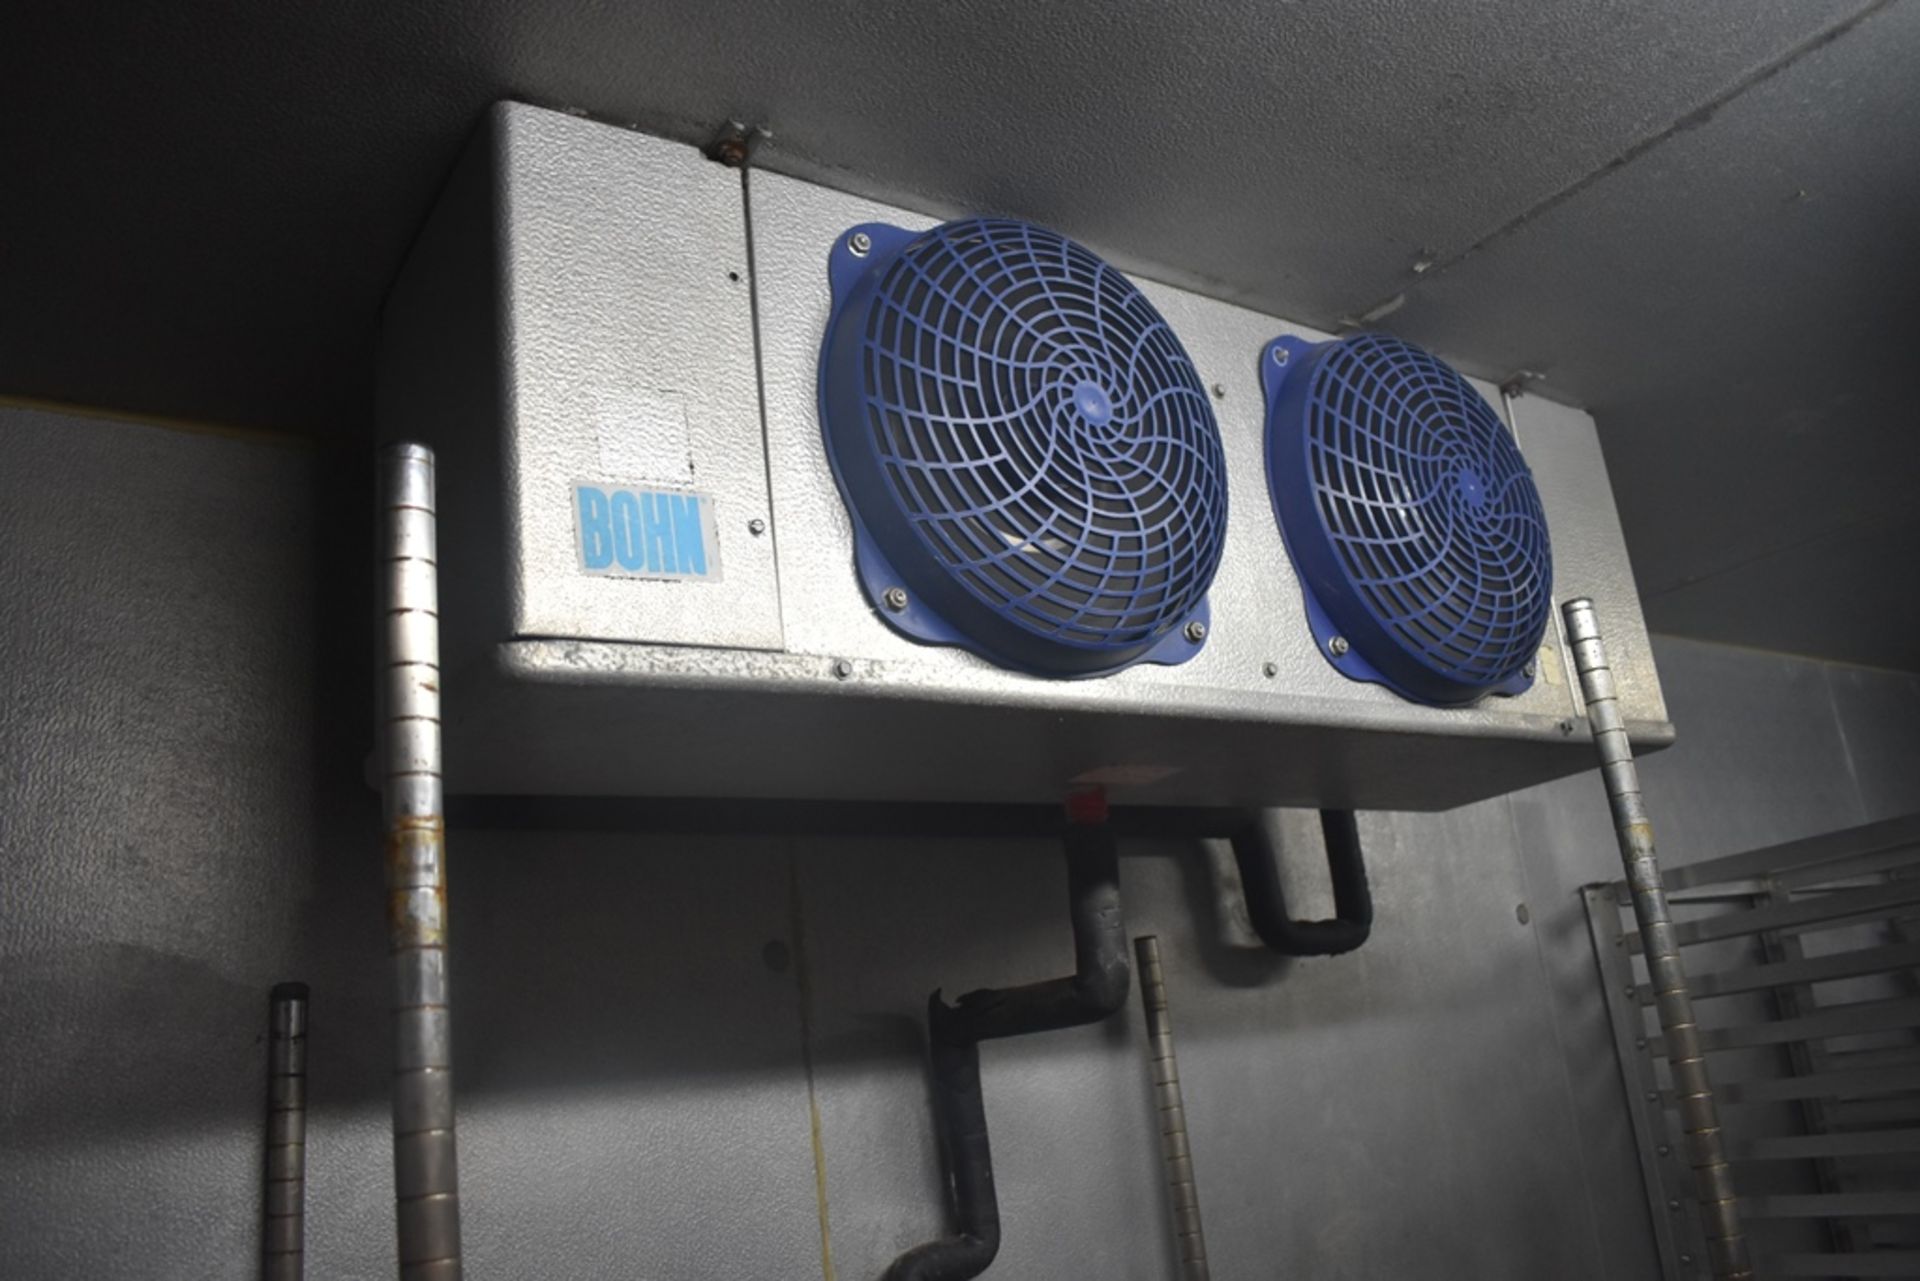 Cámara de congelación medidas 2.50 x 2.54 x 2.20 m, incluye difusor de dos ventiladores marca Bohn, - Image 14 of 31